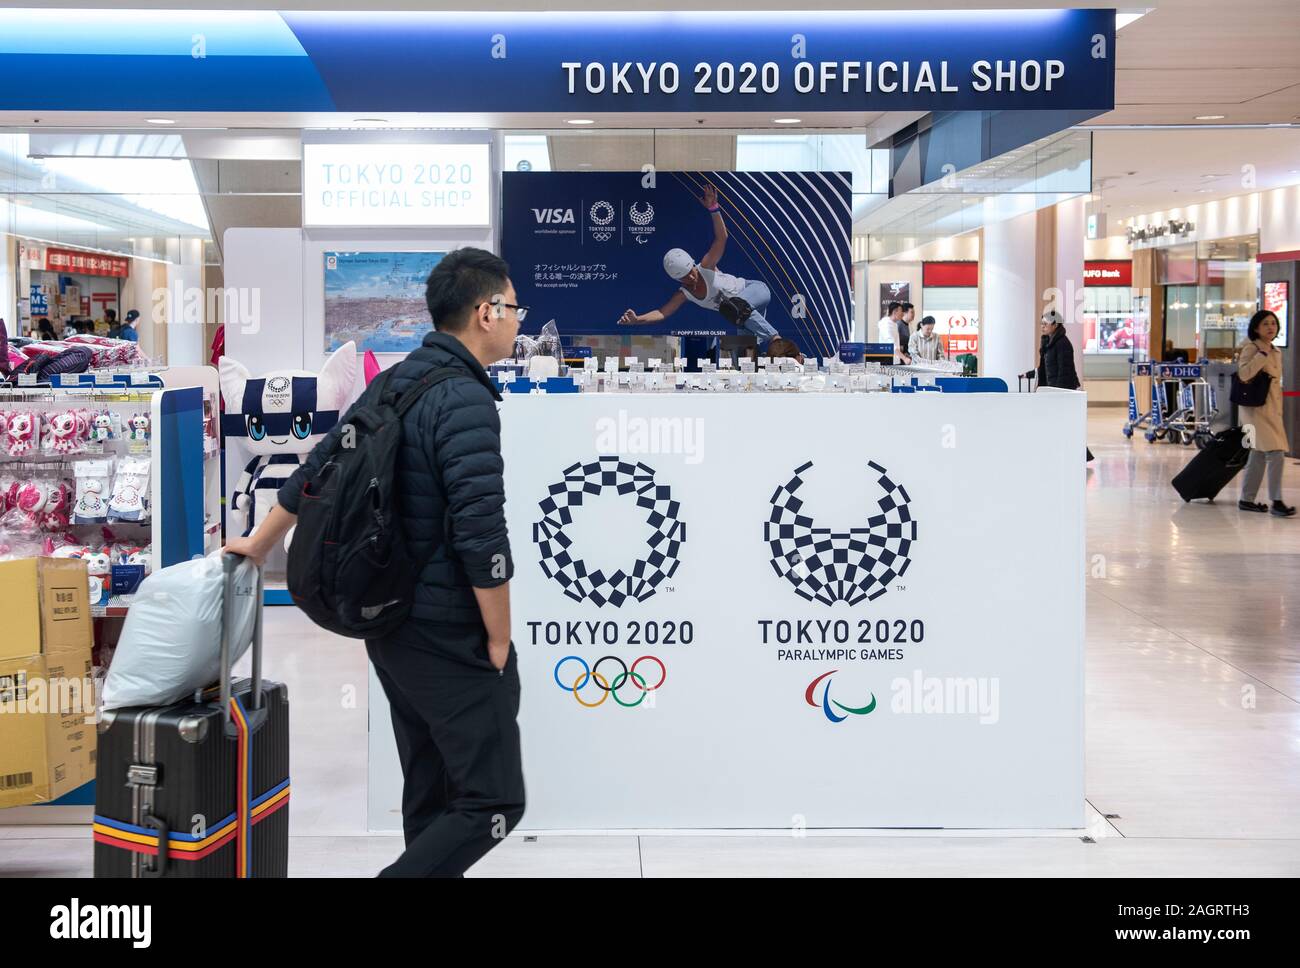 Eine reisende ging vorbei, die Olympischen Spiele und Paralympics 2020 Tokio offizielle Merchandise Store in Tokyo Narita Flughafen gesehen. Stockfoto